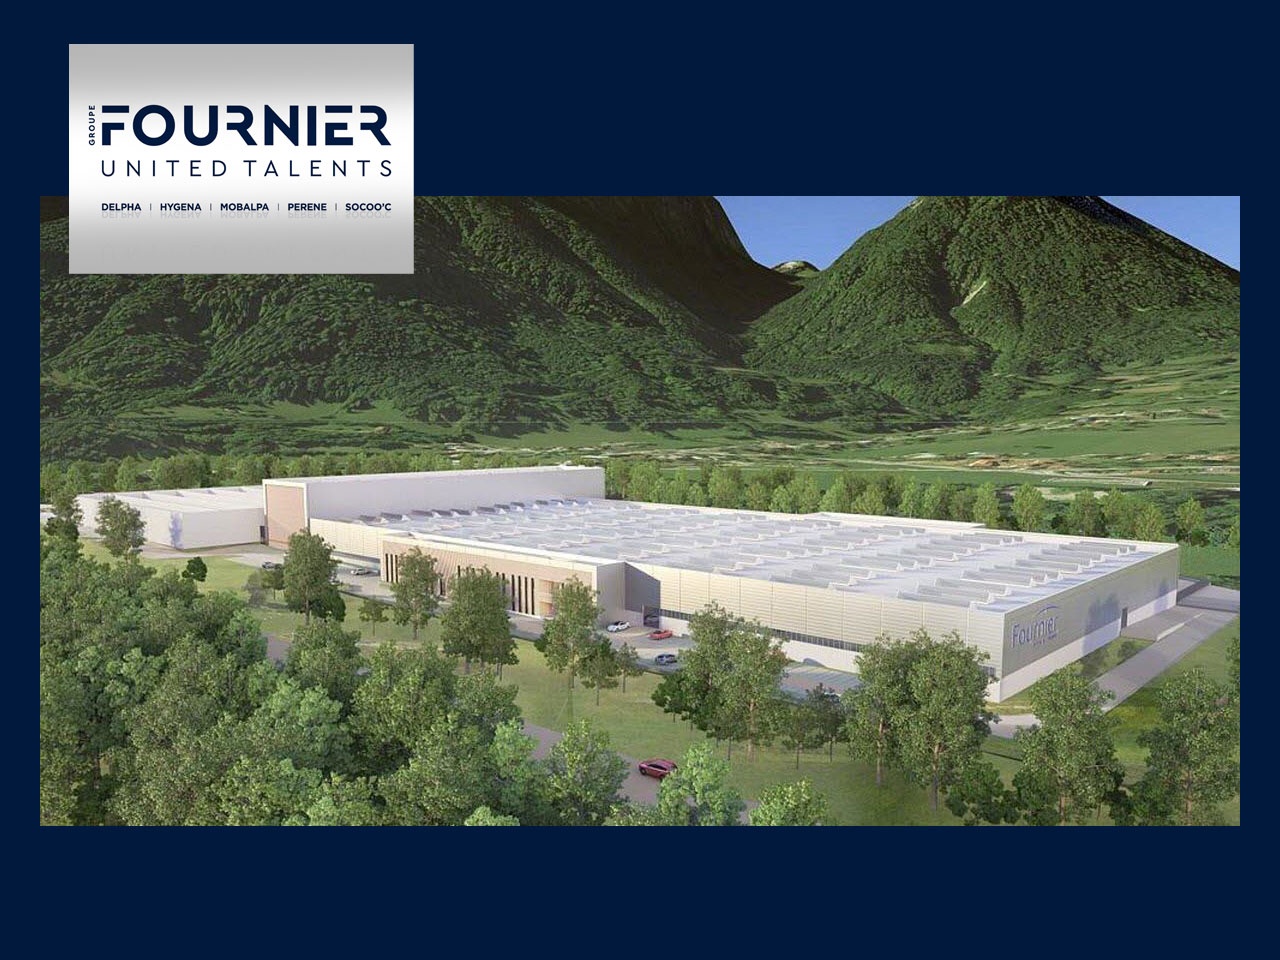 Le groupe Fournier, poursuit par manque de foncier en Haute-Savoie, son développement avec une nouvelle usine dans la Drôme